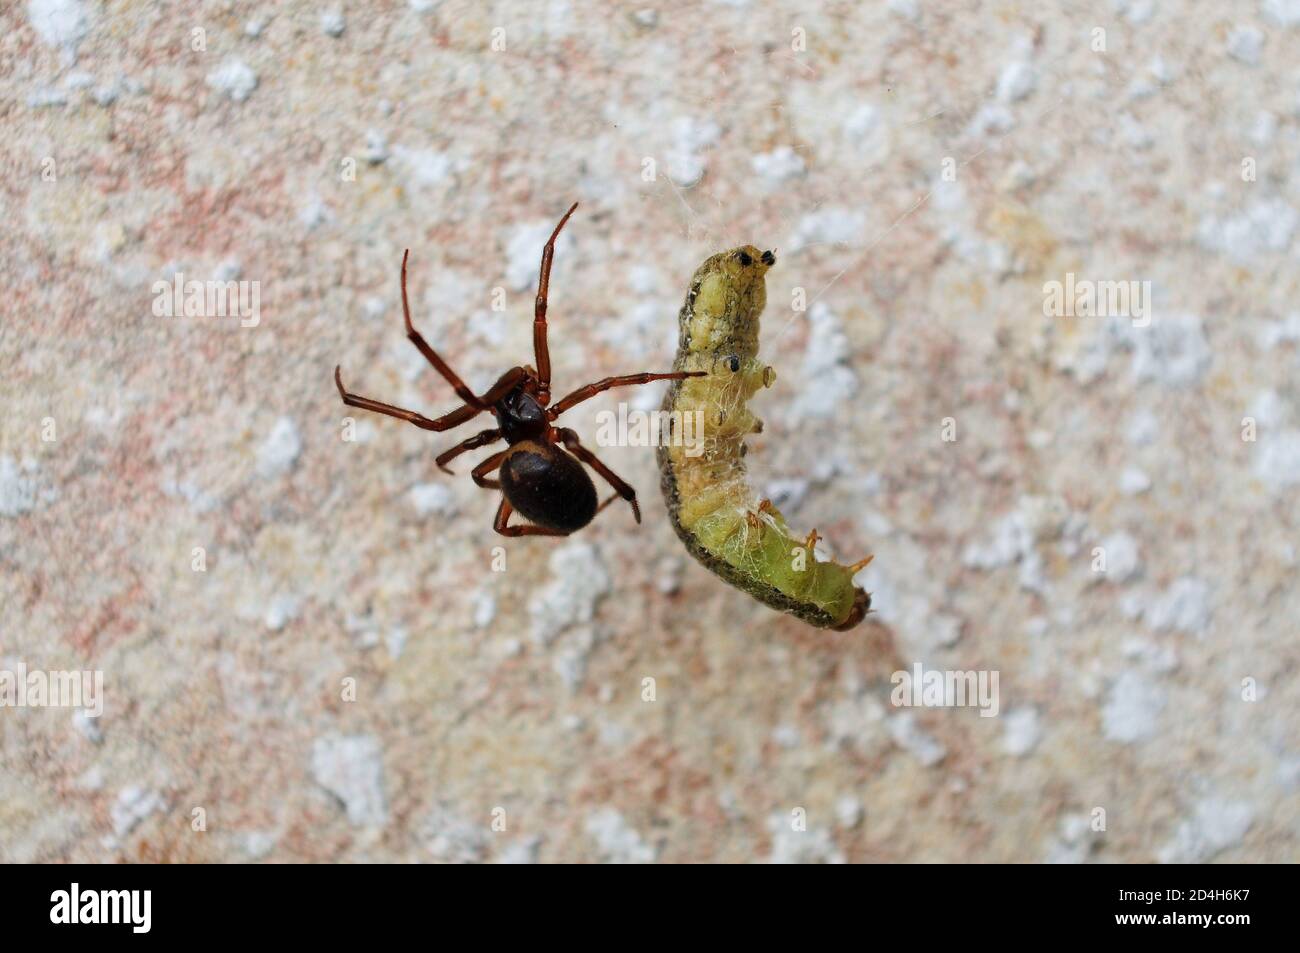 Isle of Portland. August 2020. Britische Spinnen, EINE edle falsche Witwe Spinne ( Steatoda Nobilis) wickelt eine Raupe in seinem Netz gefangen. Kredit: Stockfoto